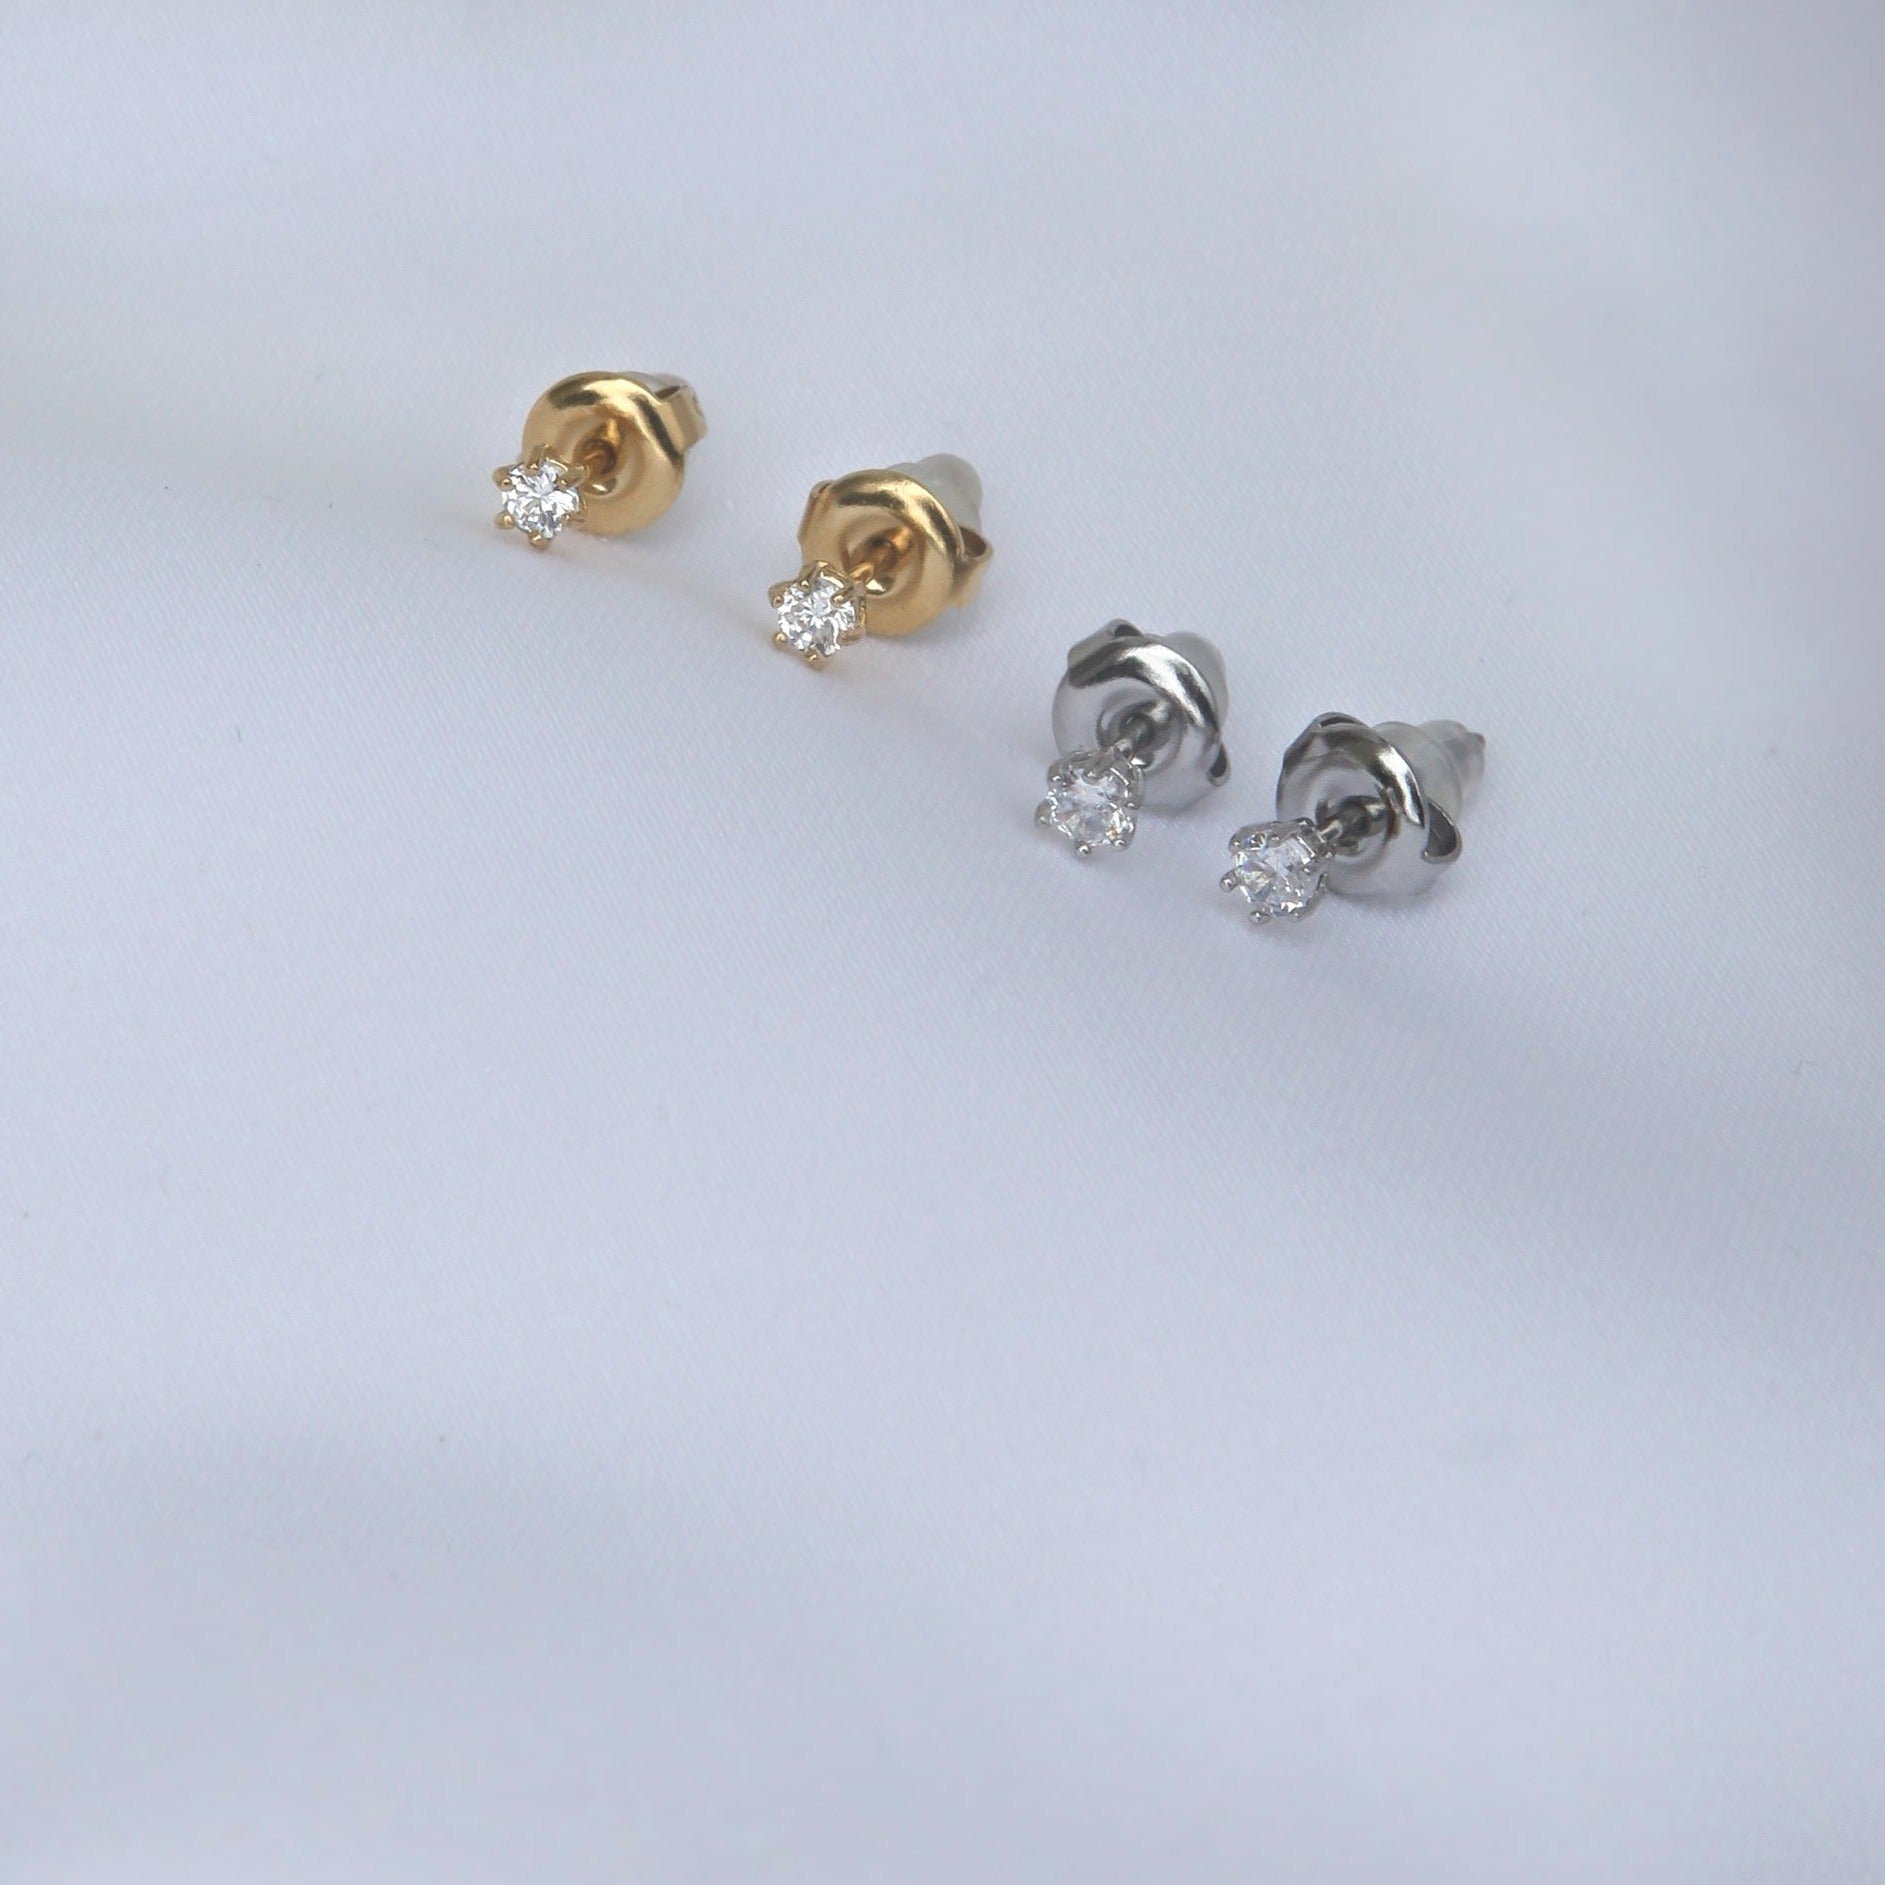 2mm Miniature Zirconia Studs - 18k Gold/Silver Earrings - Ocean Wave Jewelry